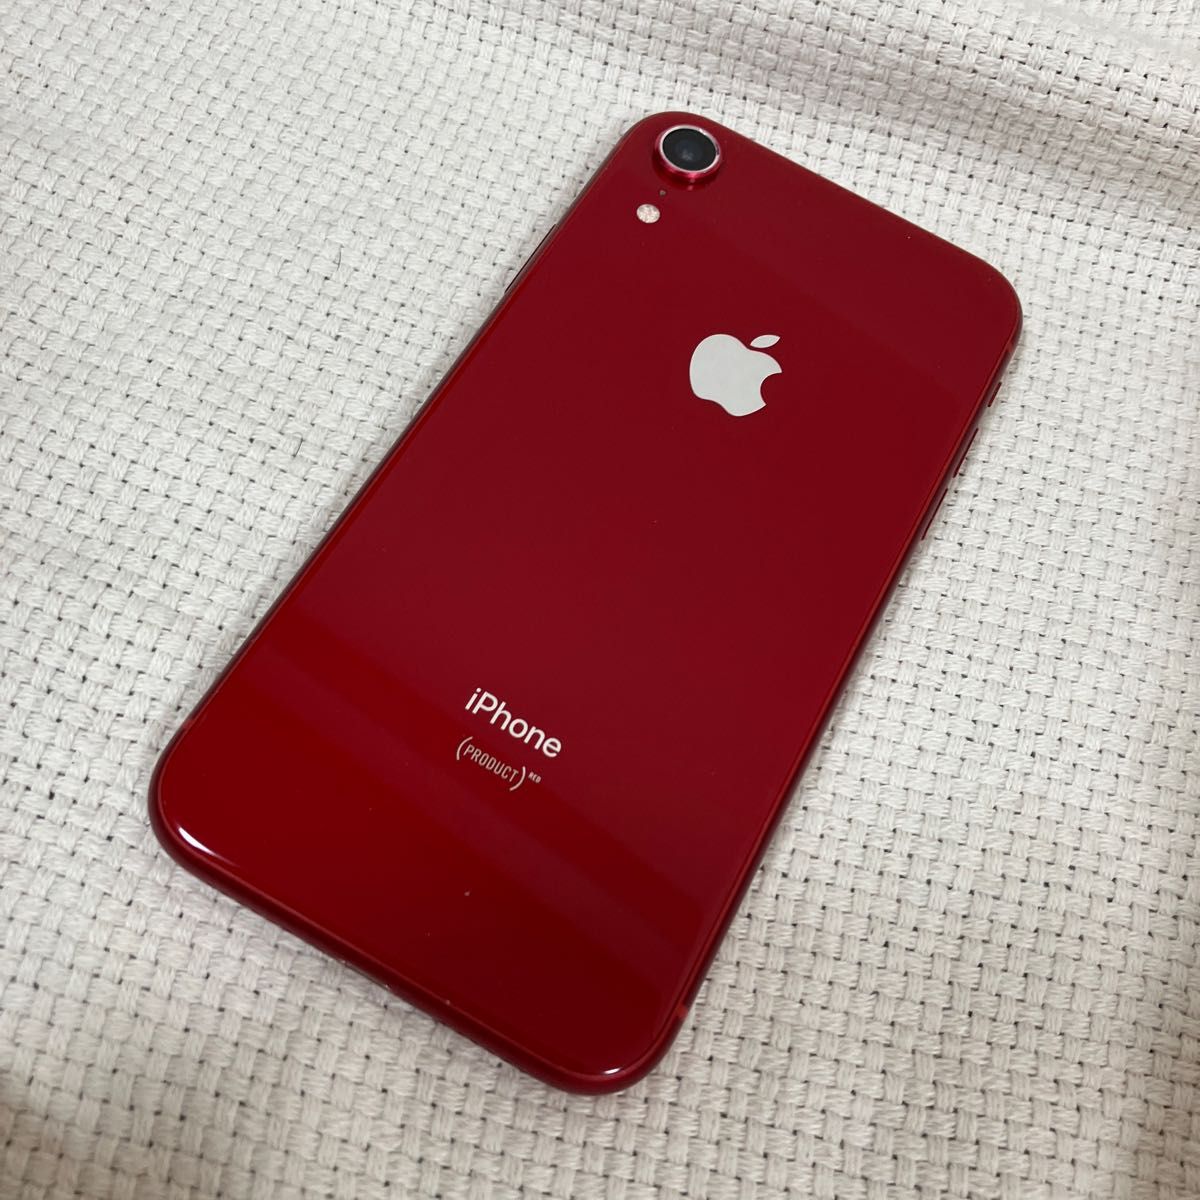 ひし型 iPhone XR product red 64gb simロック解除済み - 通販 